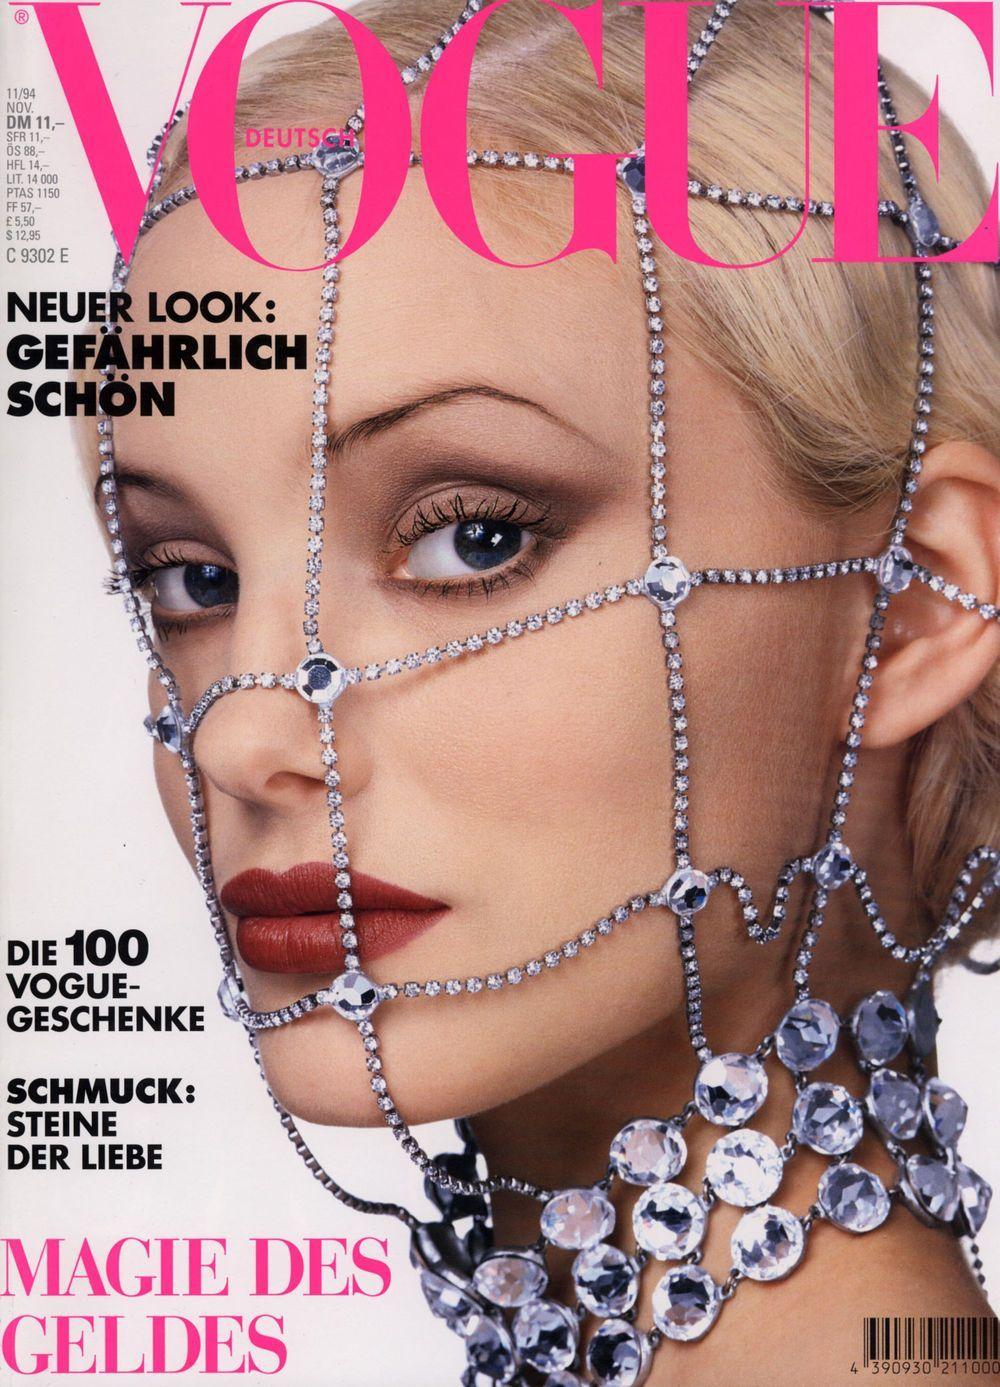 C a RIS H Ar Logo - Jaime Rishar Throughout the Years in Vogue | Vogue Deutsch Best ...